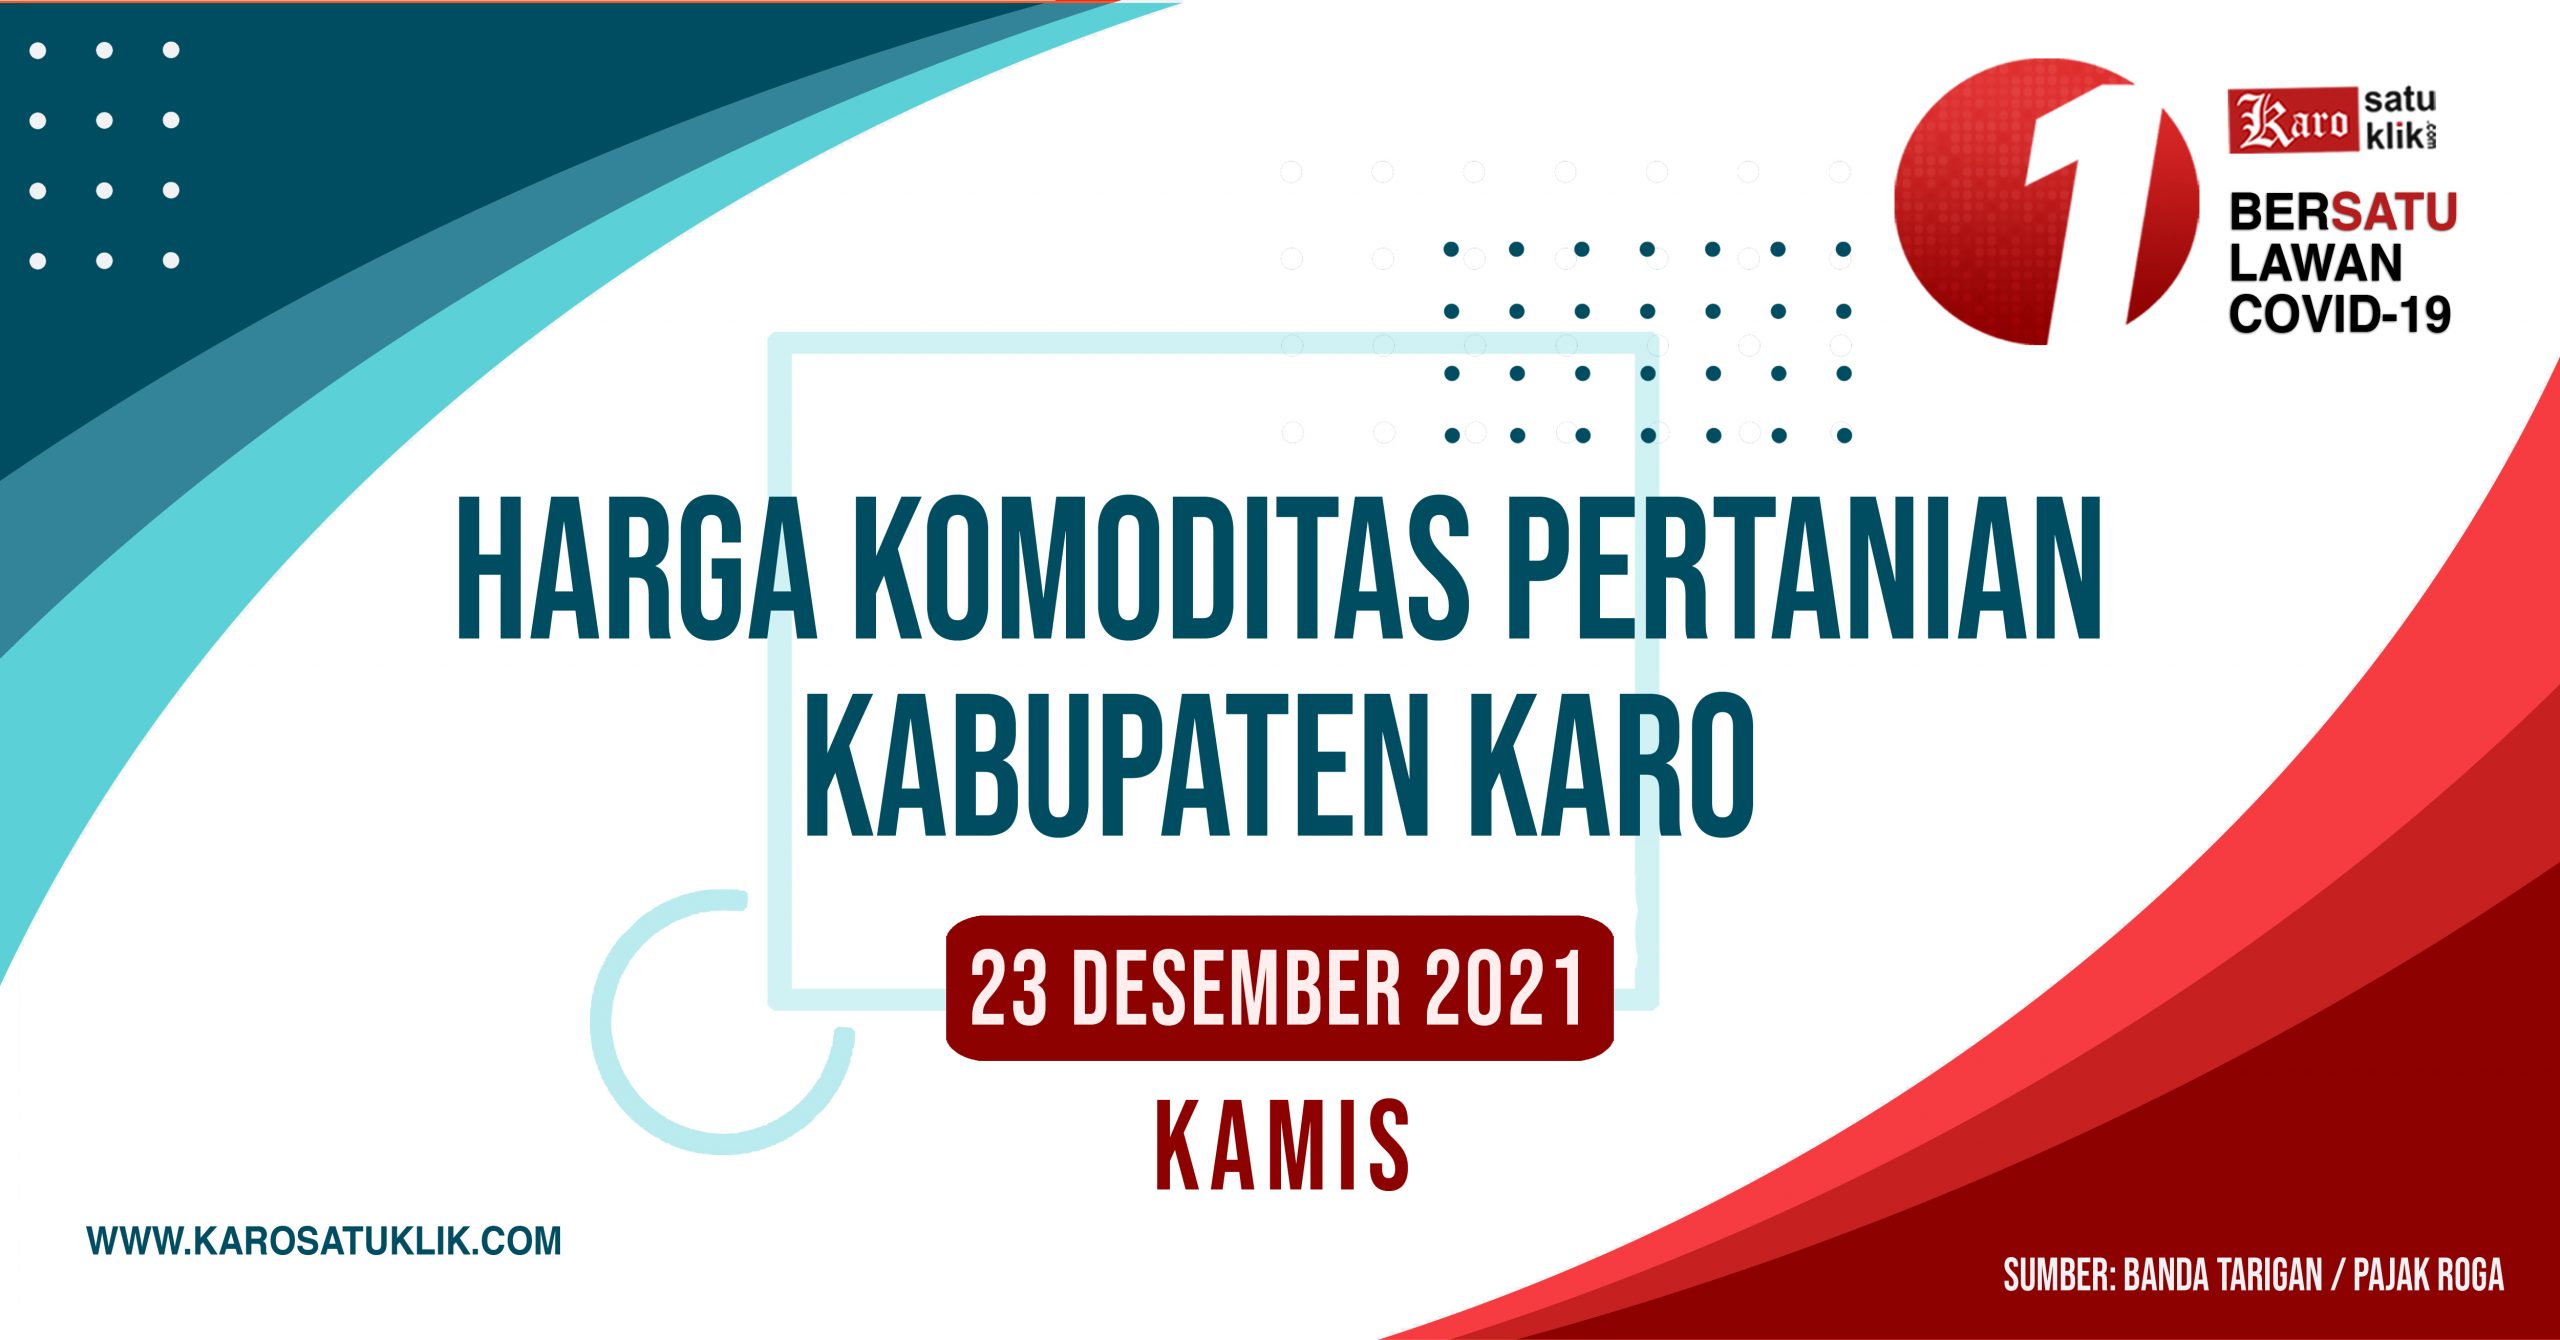 Daftar Harga Komoditas Pertanian Kabupaten Karo, 23 Desember 2021